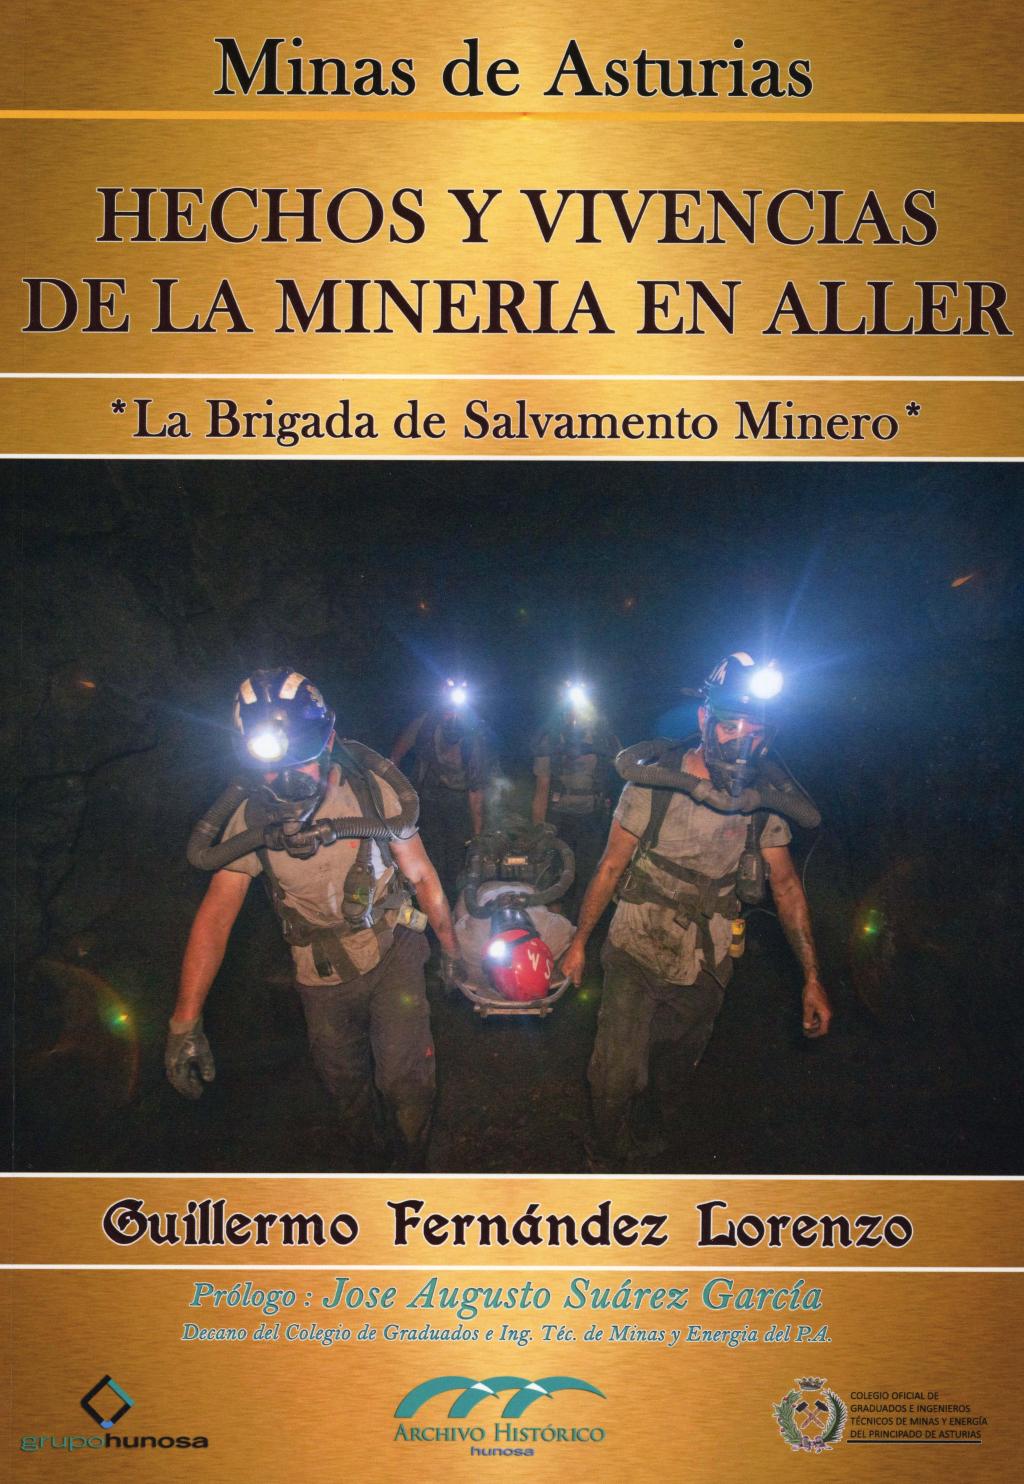 Colaboraciones Hechos y vivencias de la minería en Aller Archivo Histórico Hunosa Pozo Fondón